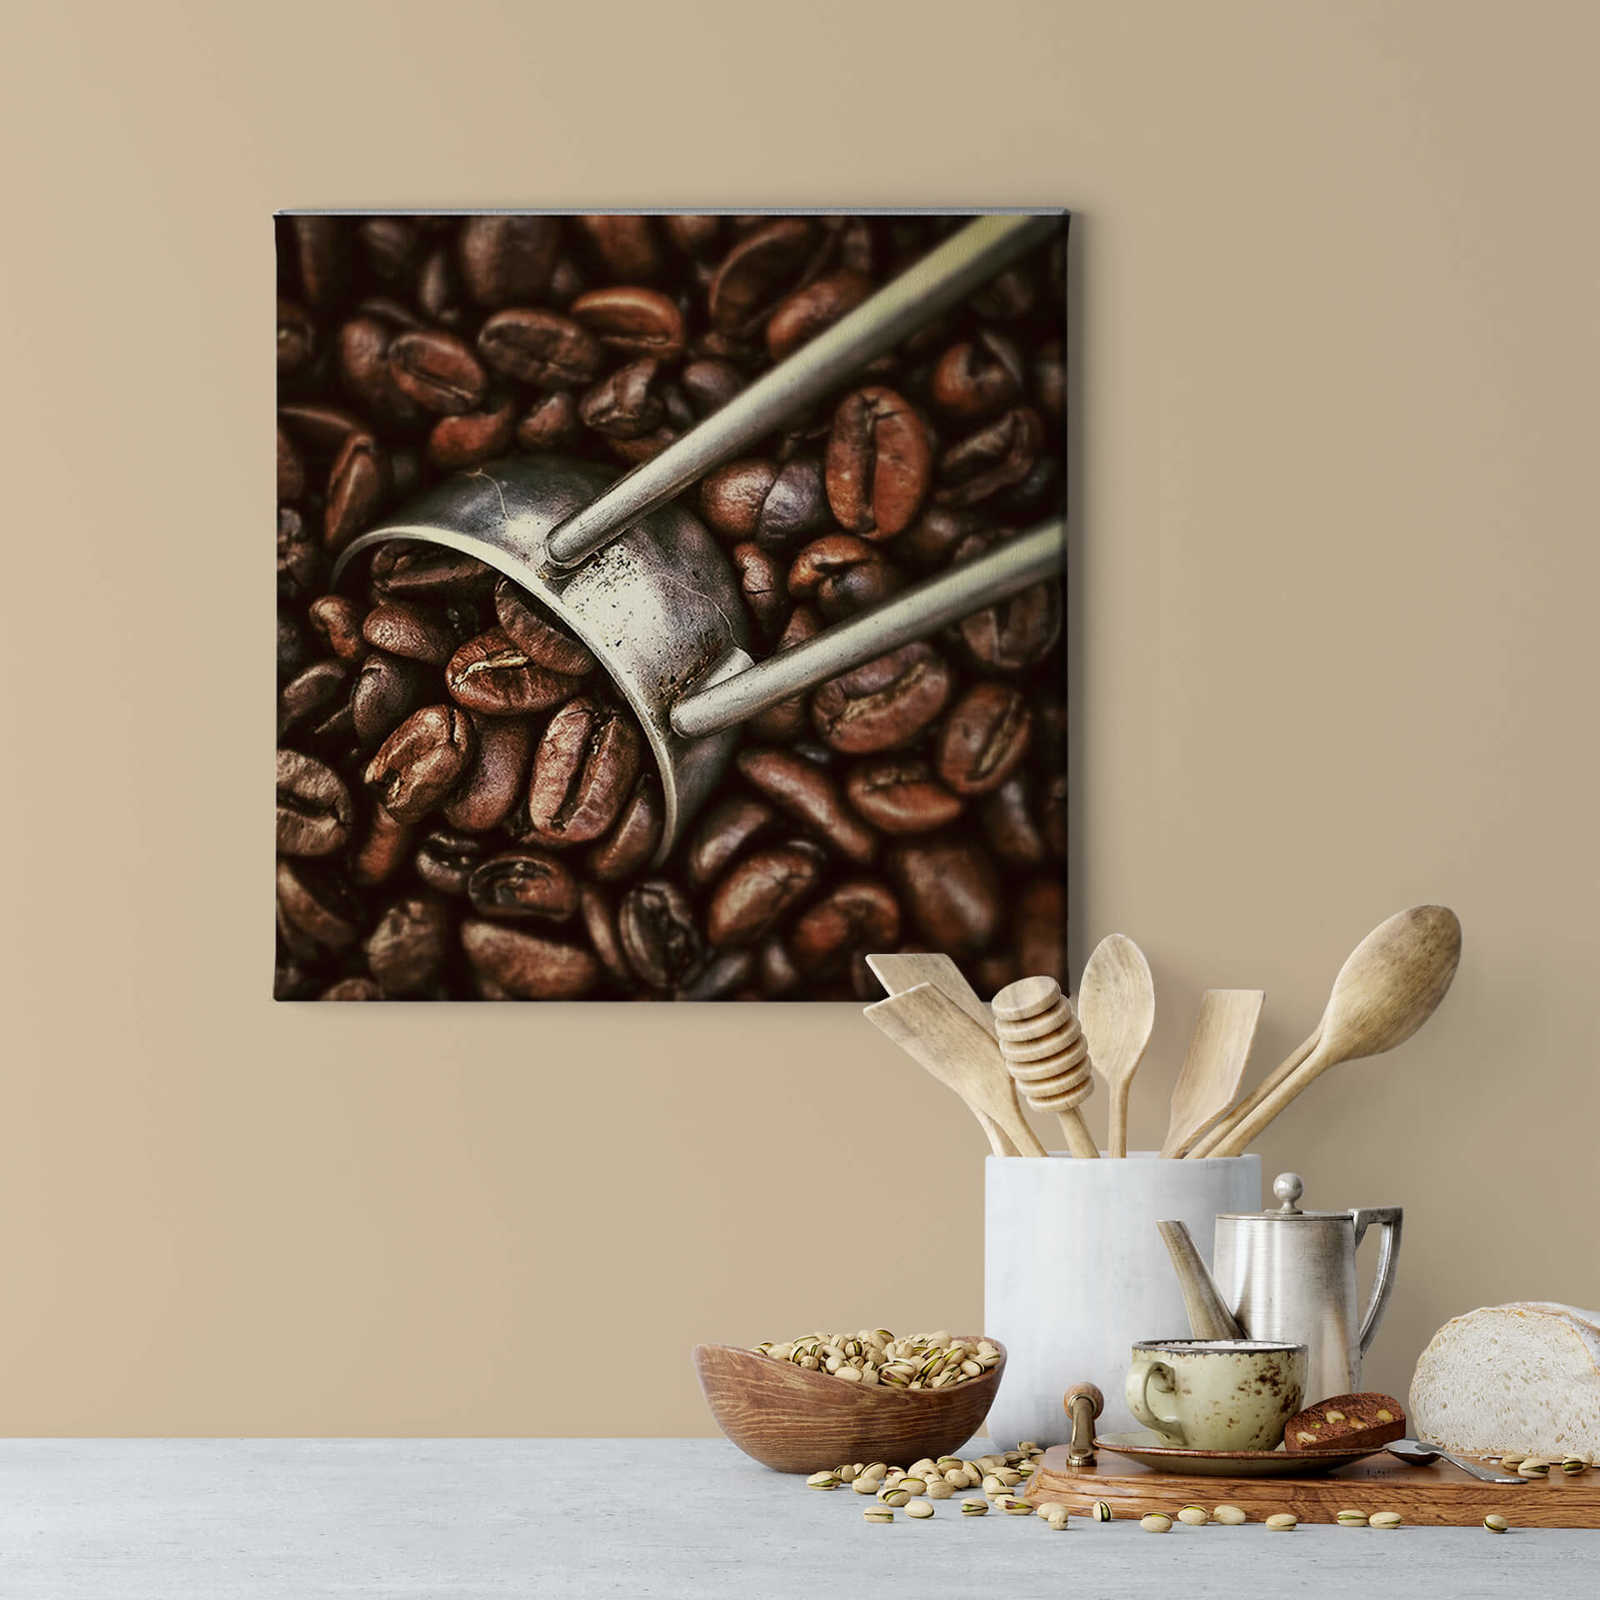             Cuadro cuadrado Granos de café - 0,50 m x 0,50 m
        